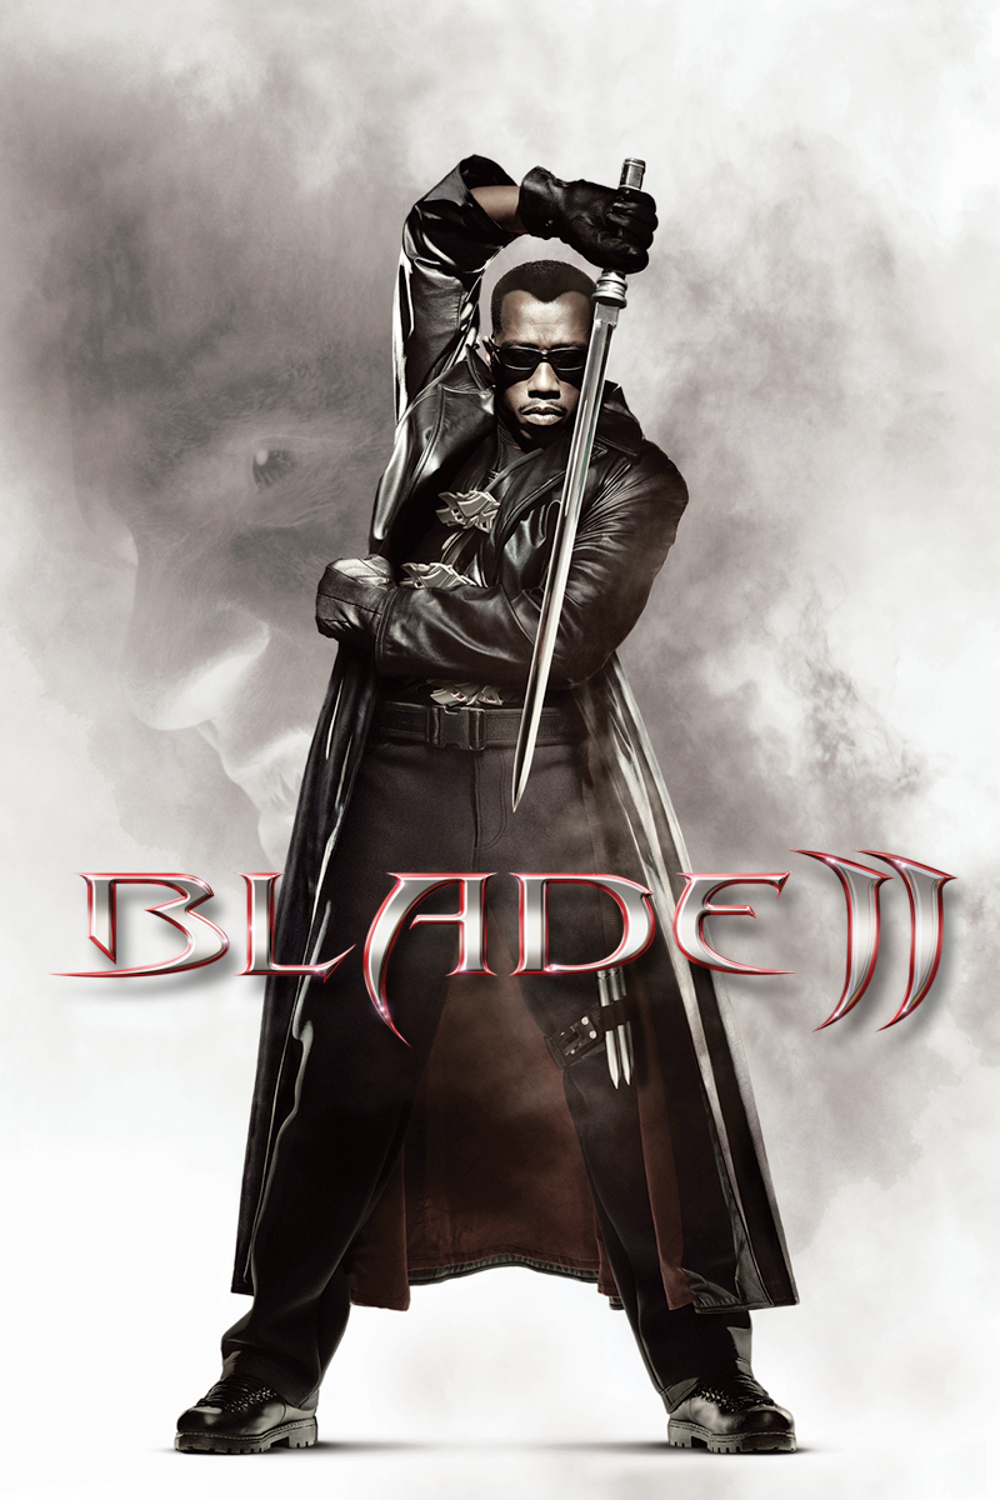 Plakat von "Blade II"